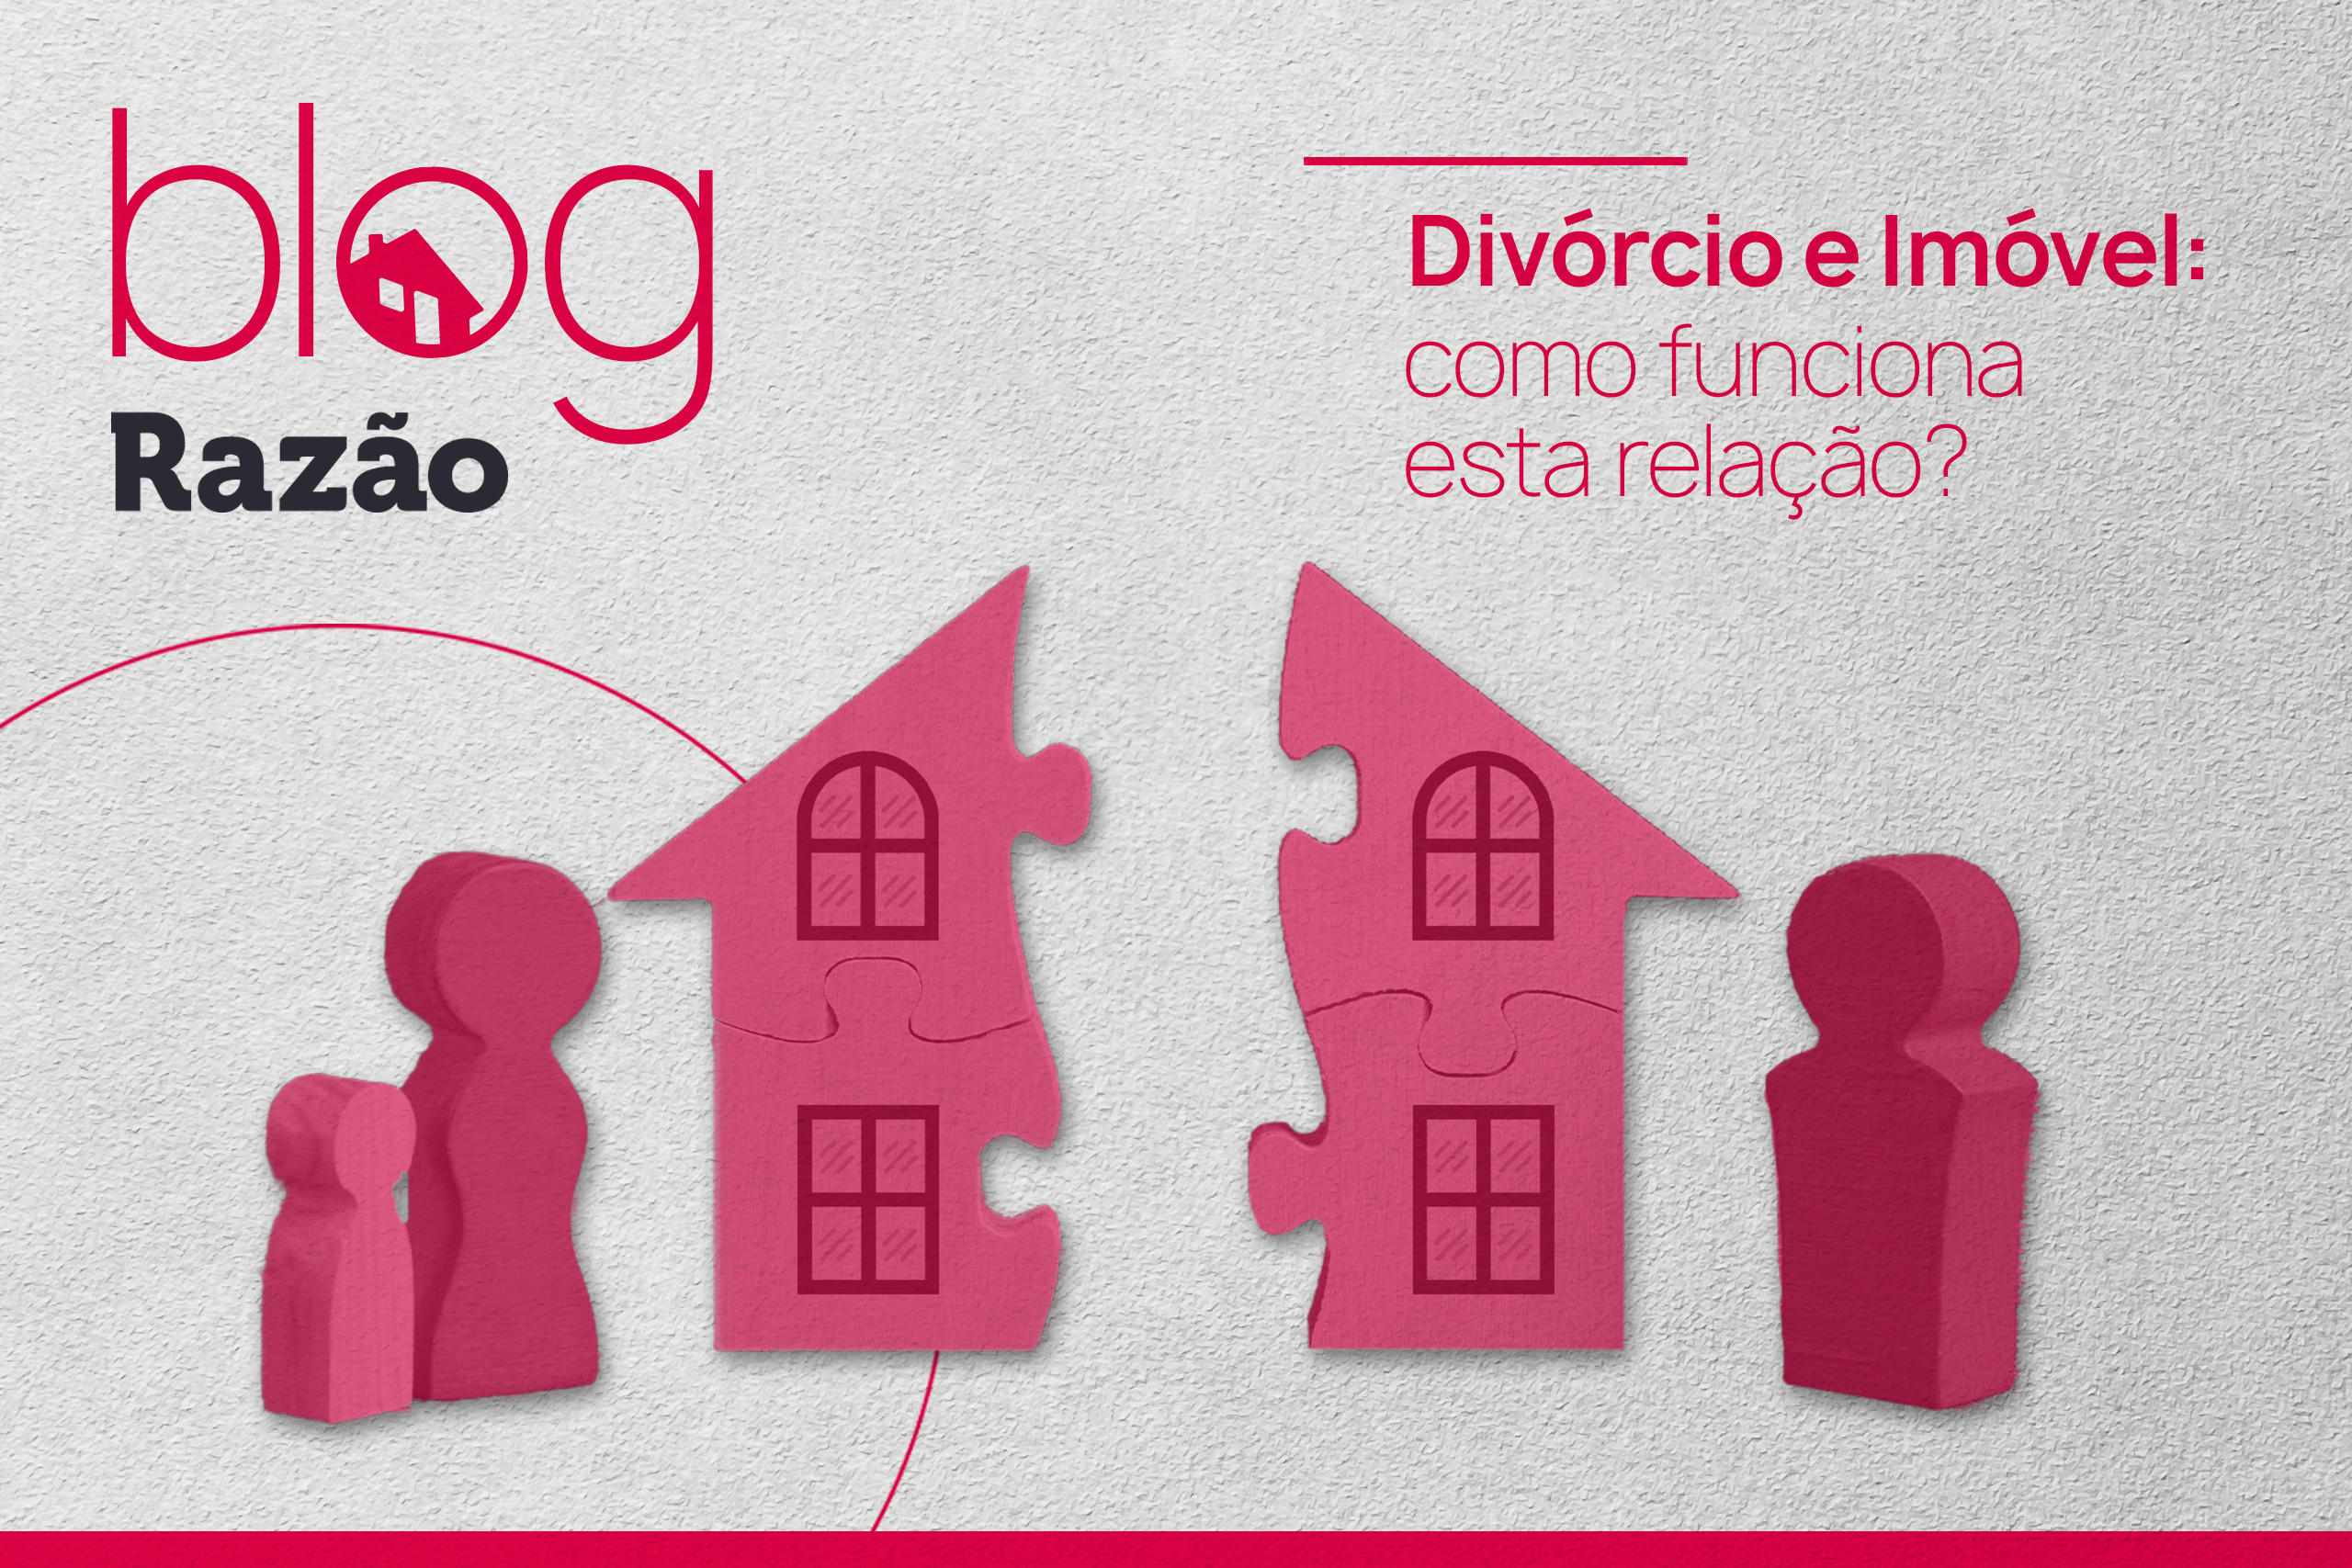 Divórcio e imóvel: como funciona esta relação?